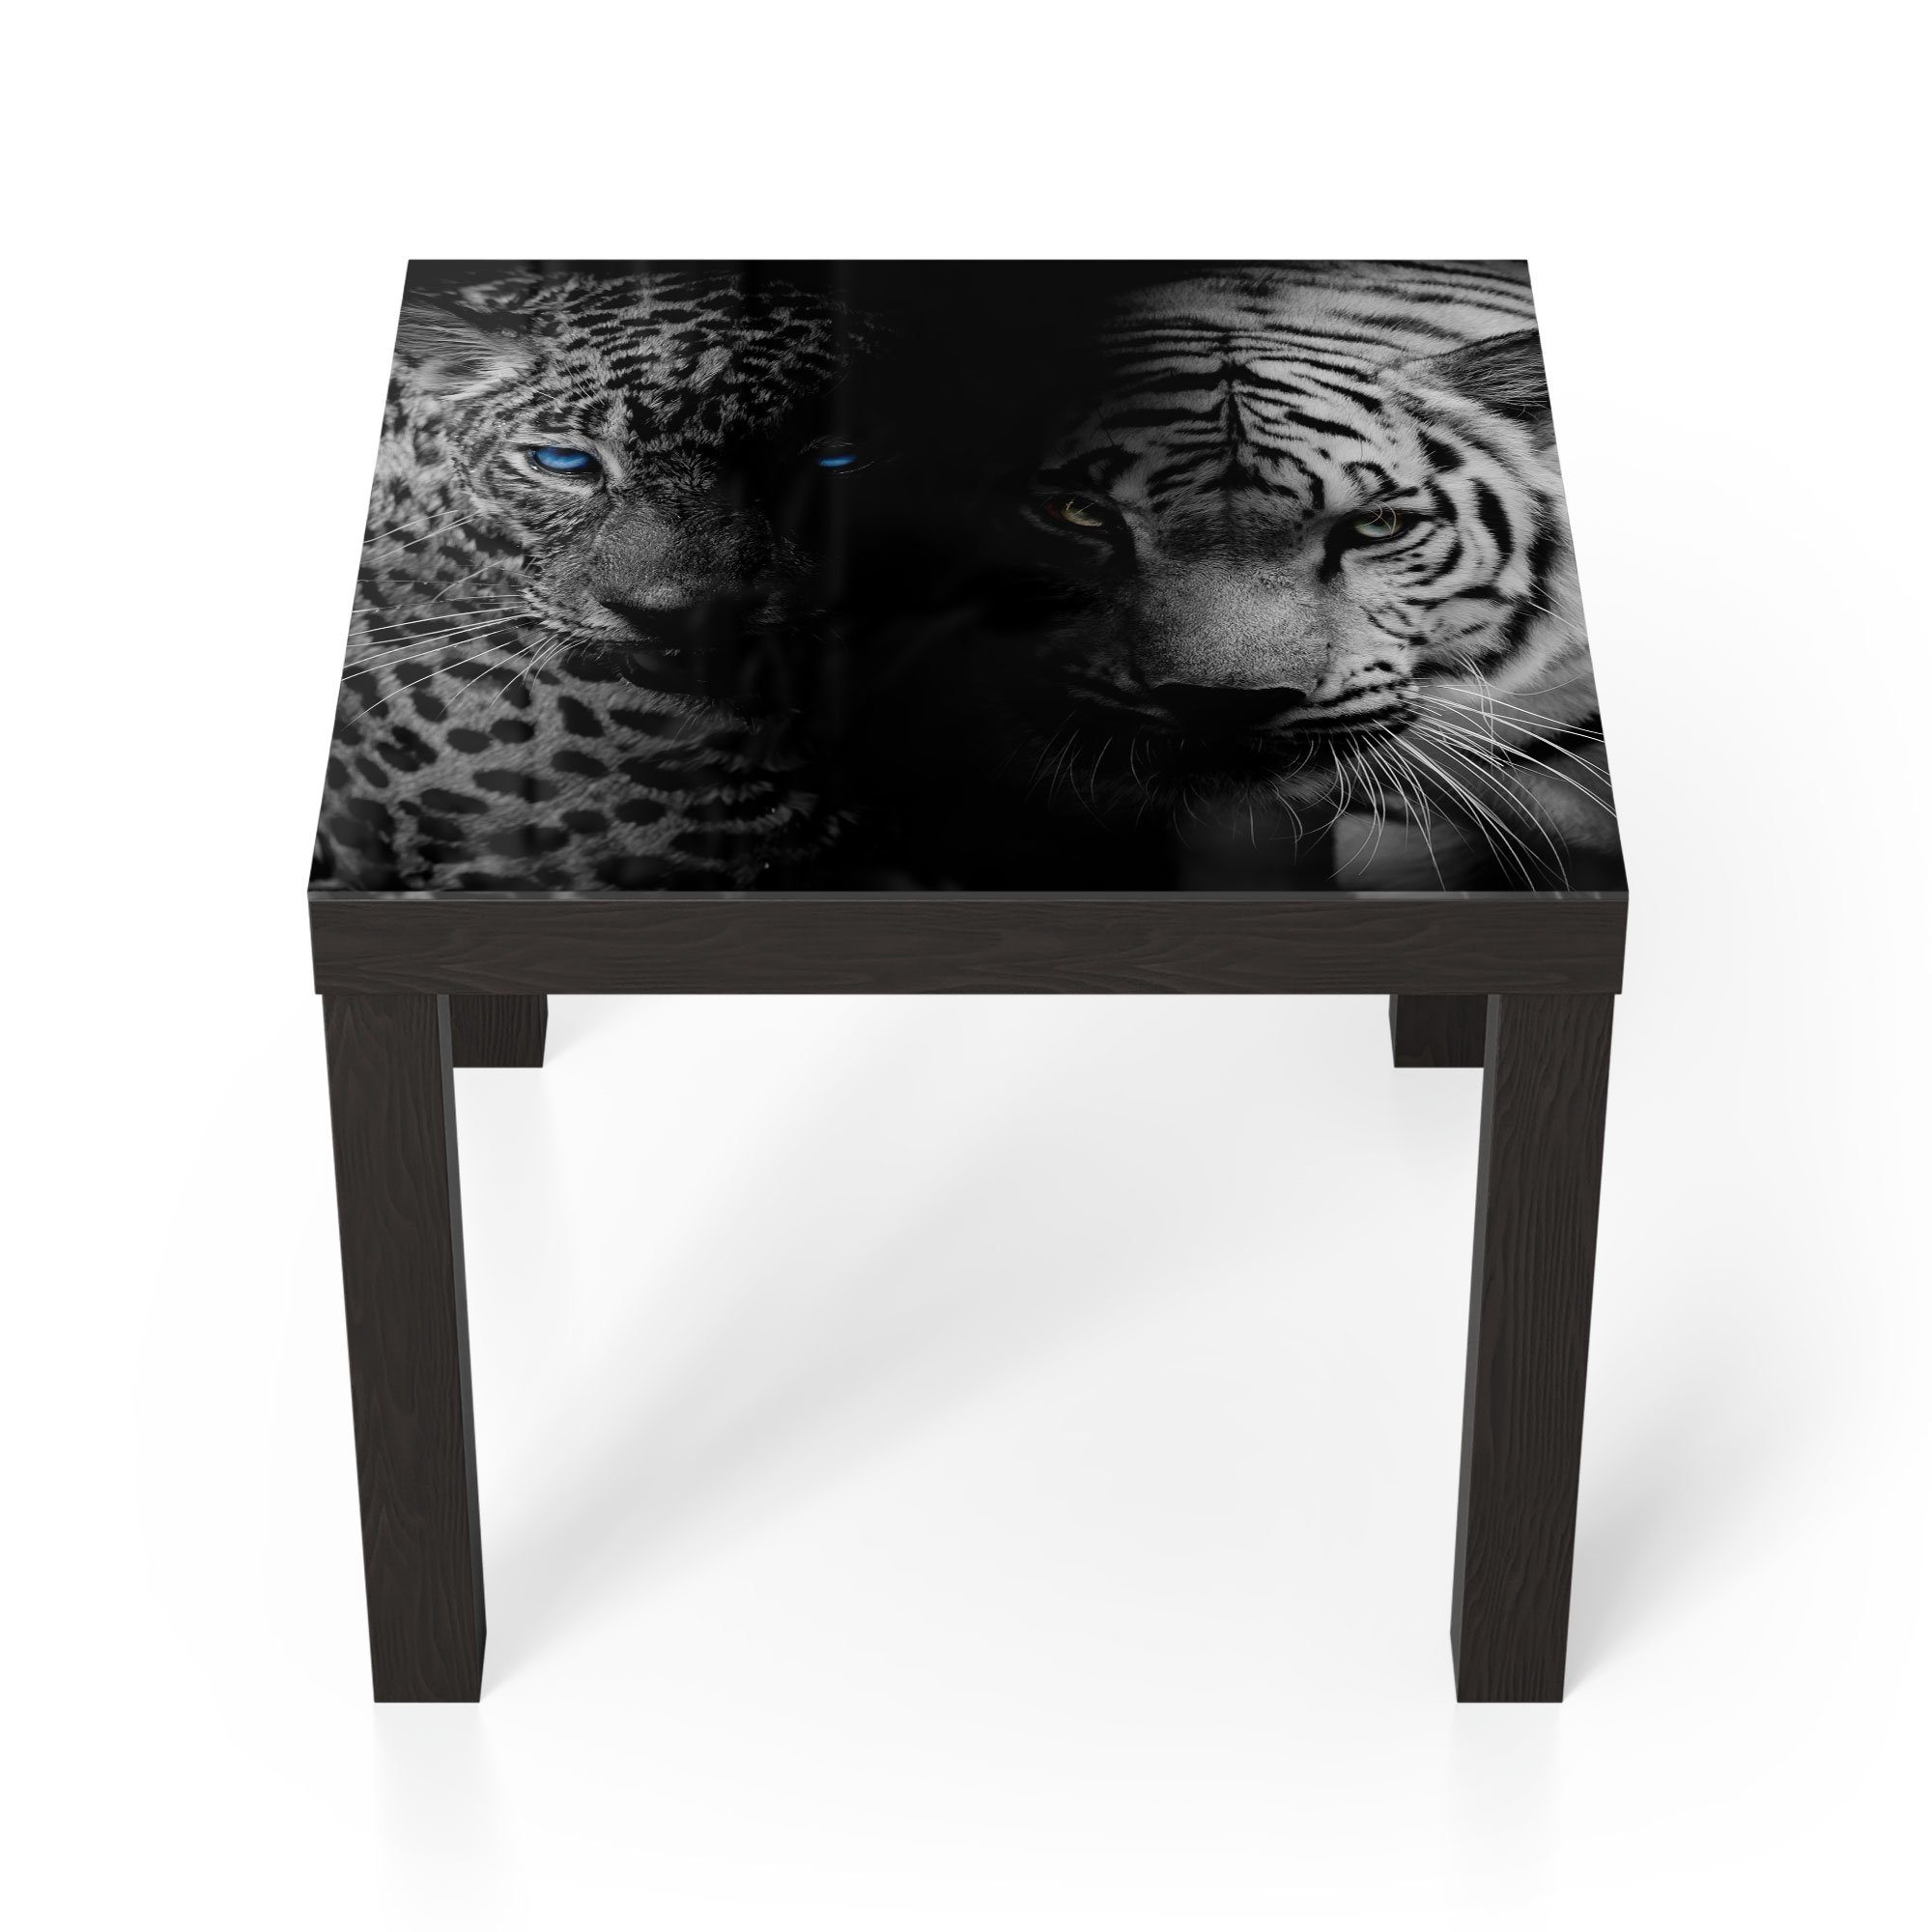 DEQORI Couchtisch 'Leopard und Tiger', Glas Beistelltisch Glastisch modern Schwarz